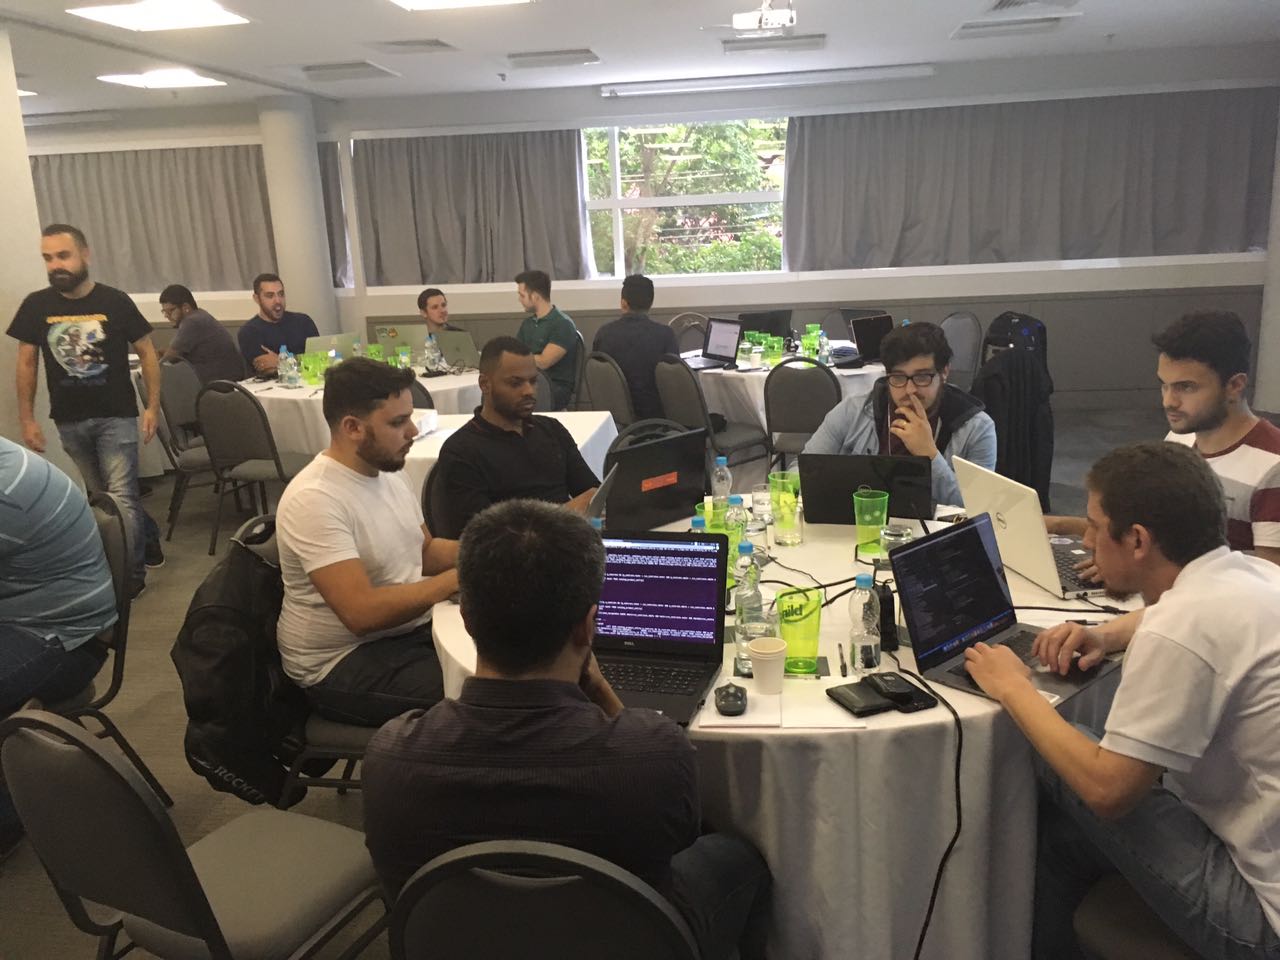 Hackatón Meet Magento Brazil 2017